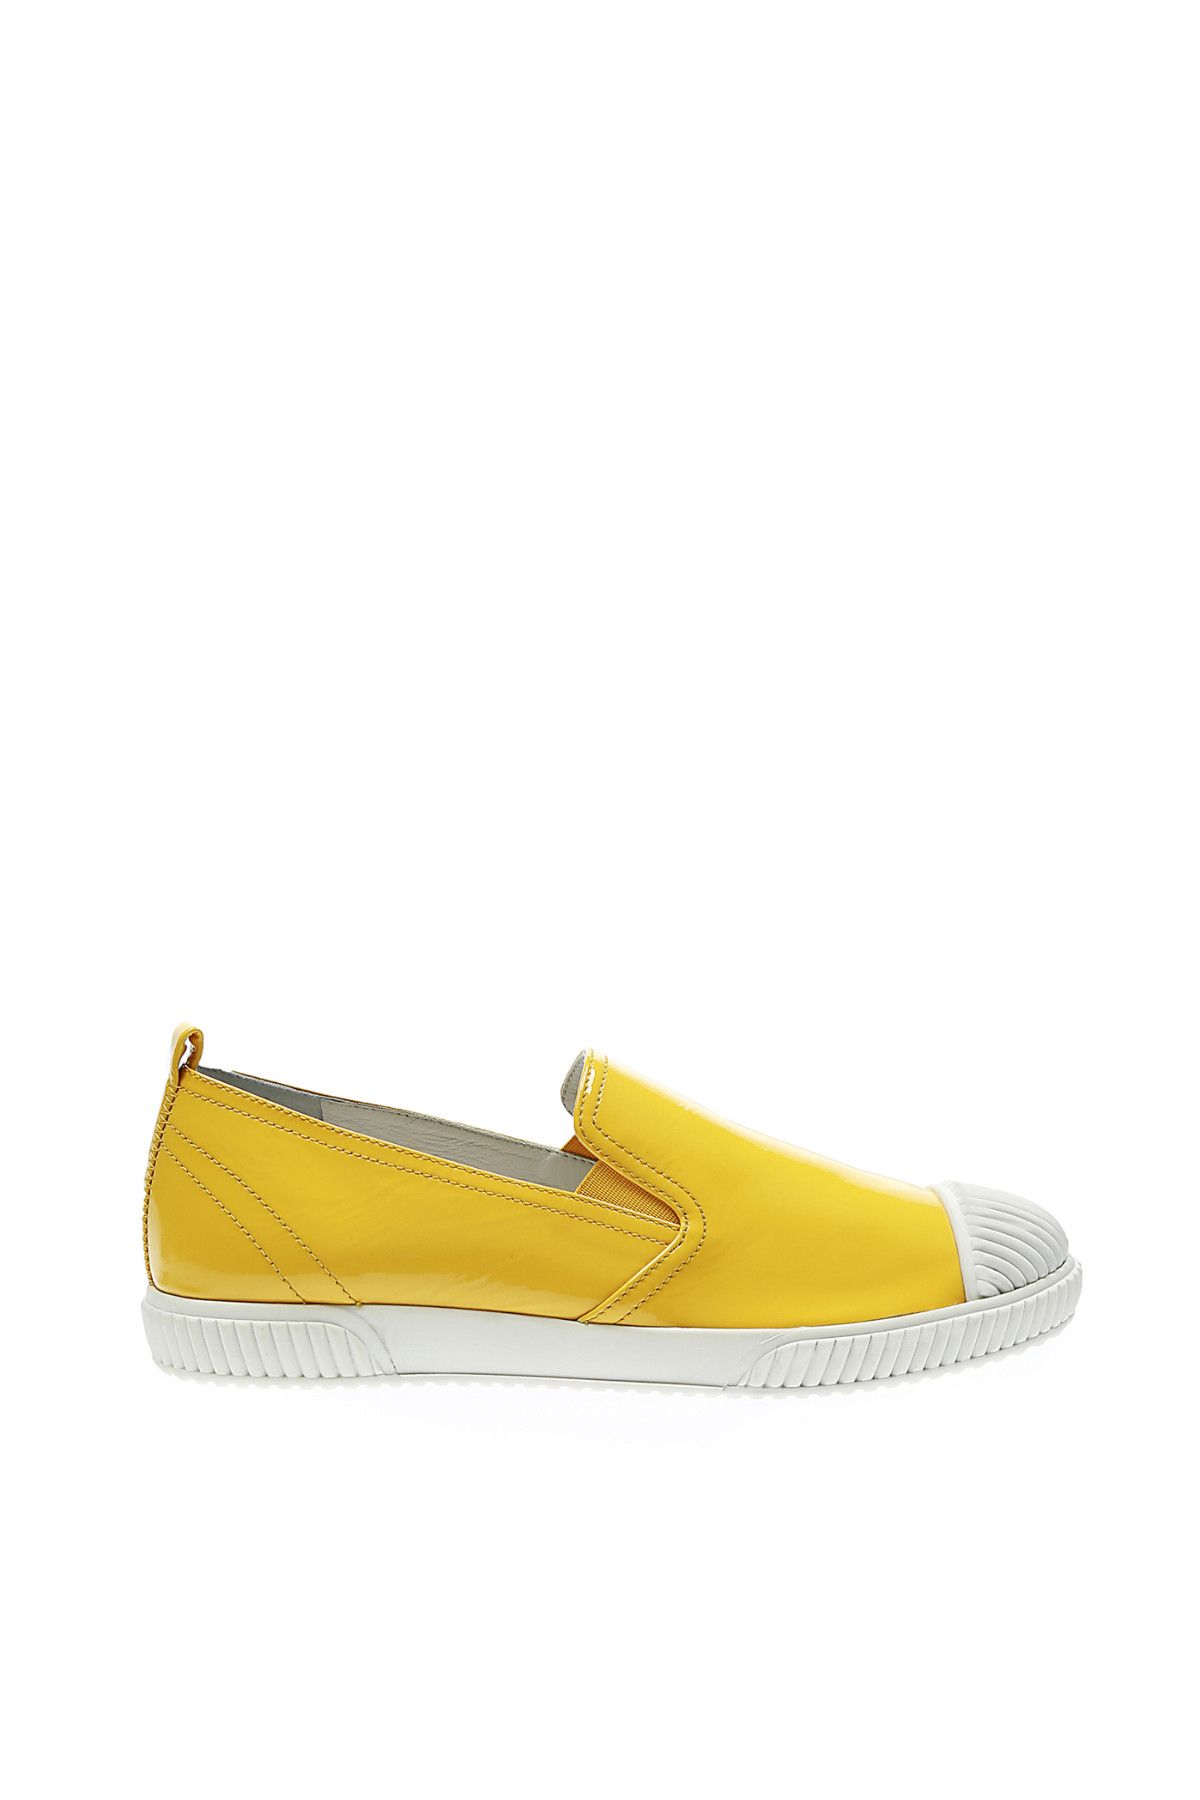 Prada Kadın Sarı Günlük Ayakkabı 5952